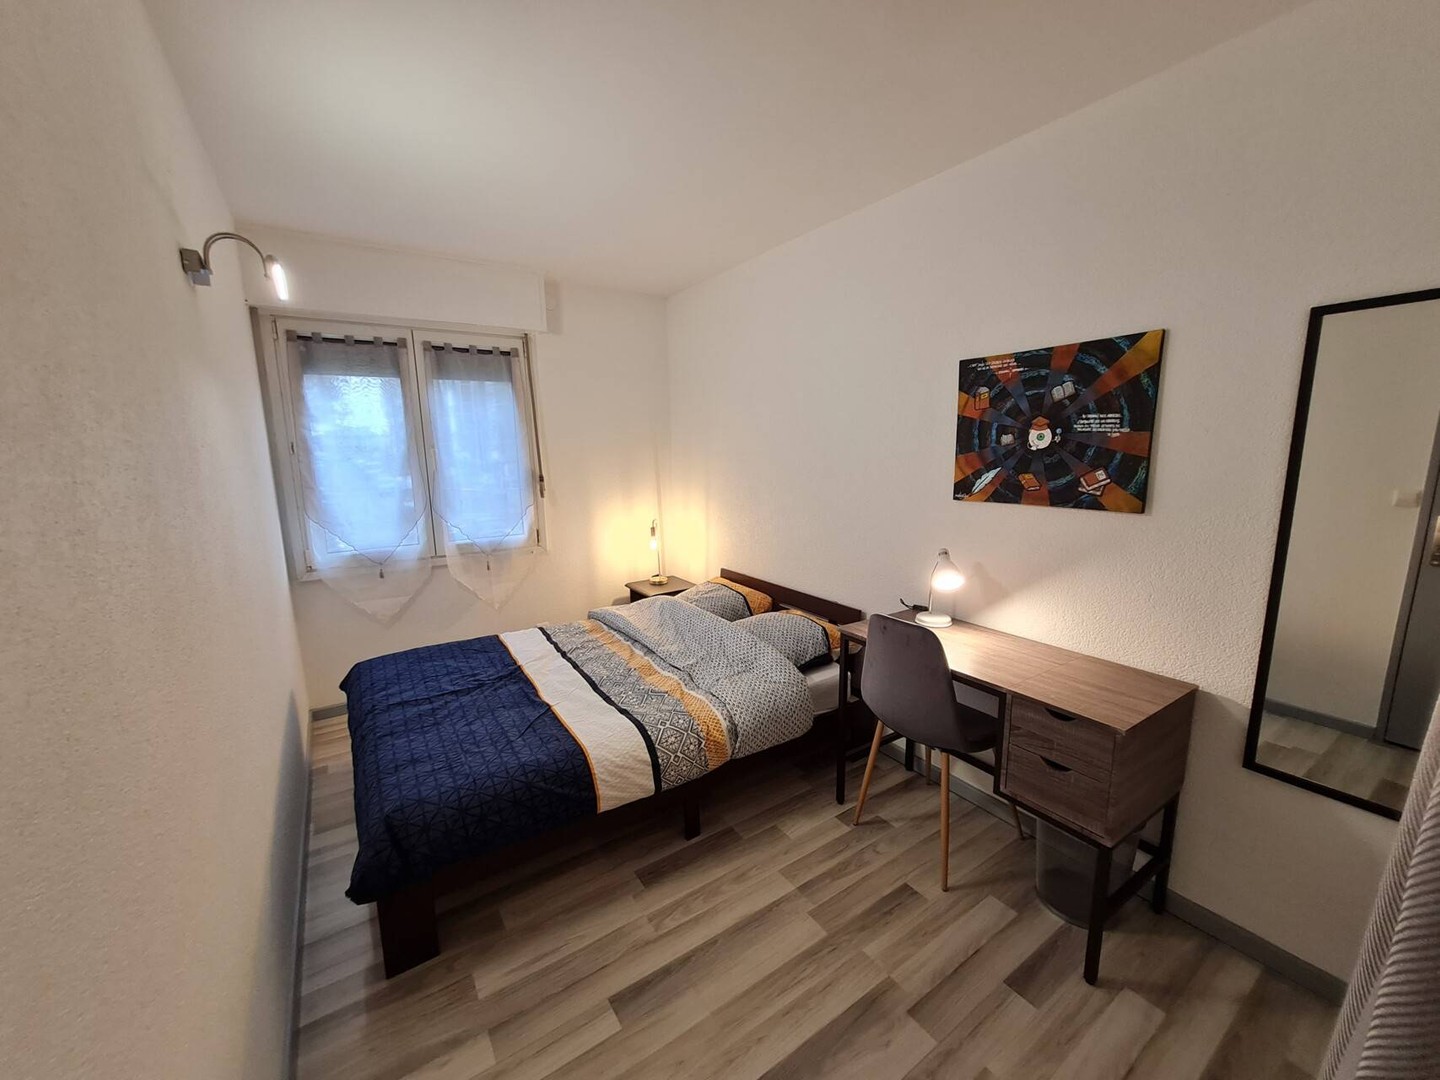 Alquiler de habitación en piso compartido en Mulhouse